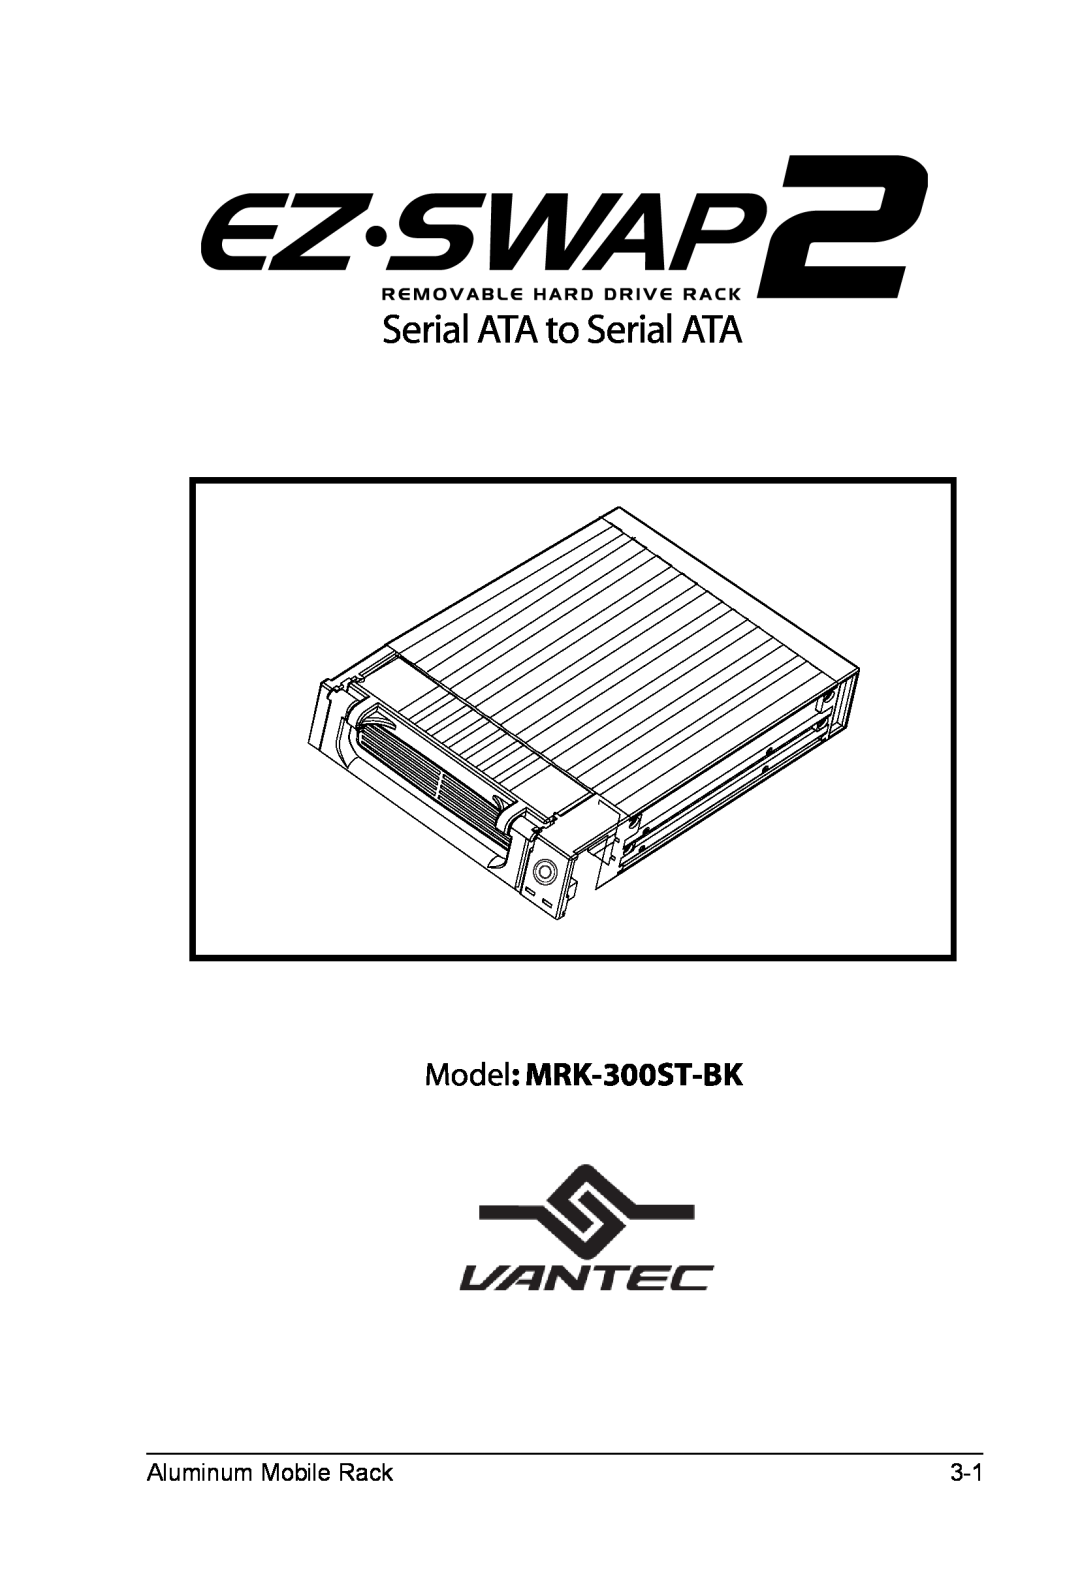 Vantec EZ-Swap2 Removable Hard Drive Rack Serial ATA to Serial ATA manual Model MRK-300ST-BK, Aluminum Mobile Rack 